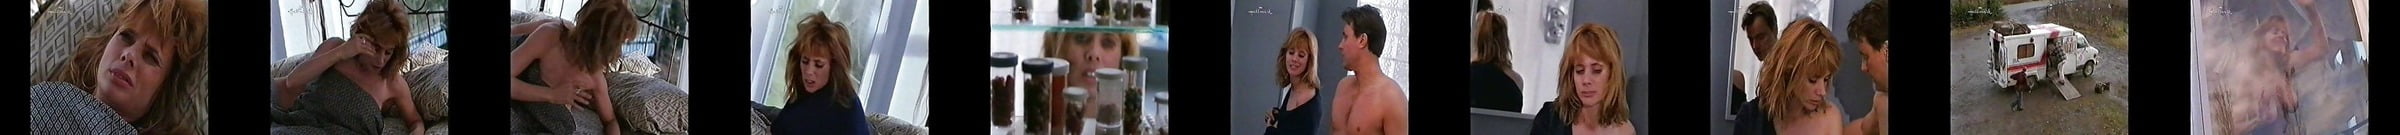 Rosanna Arquette à Poil Vidéos De Sexe Et Photos à Poil Volées Au